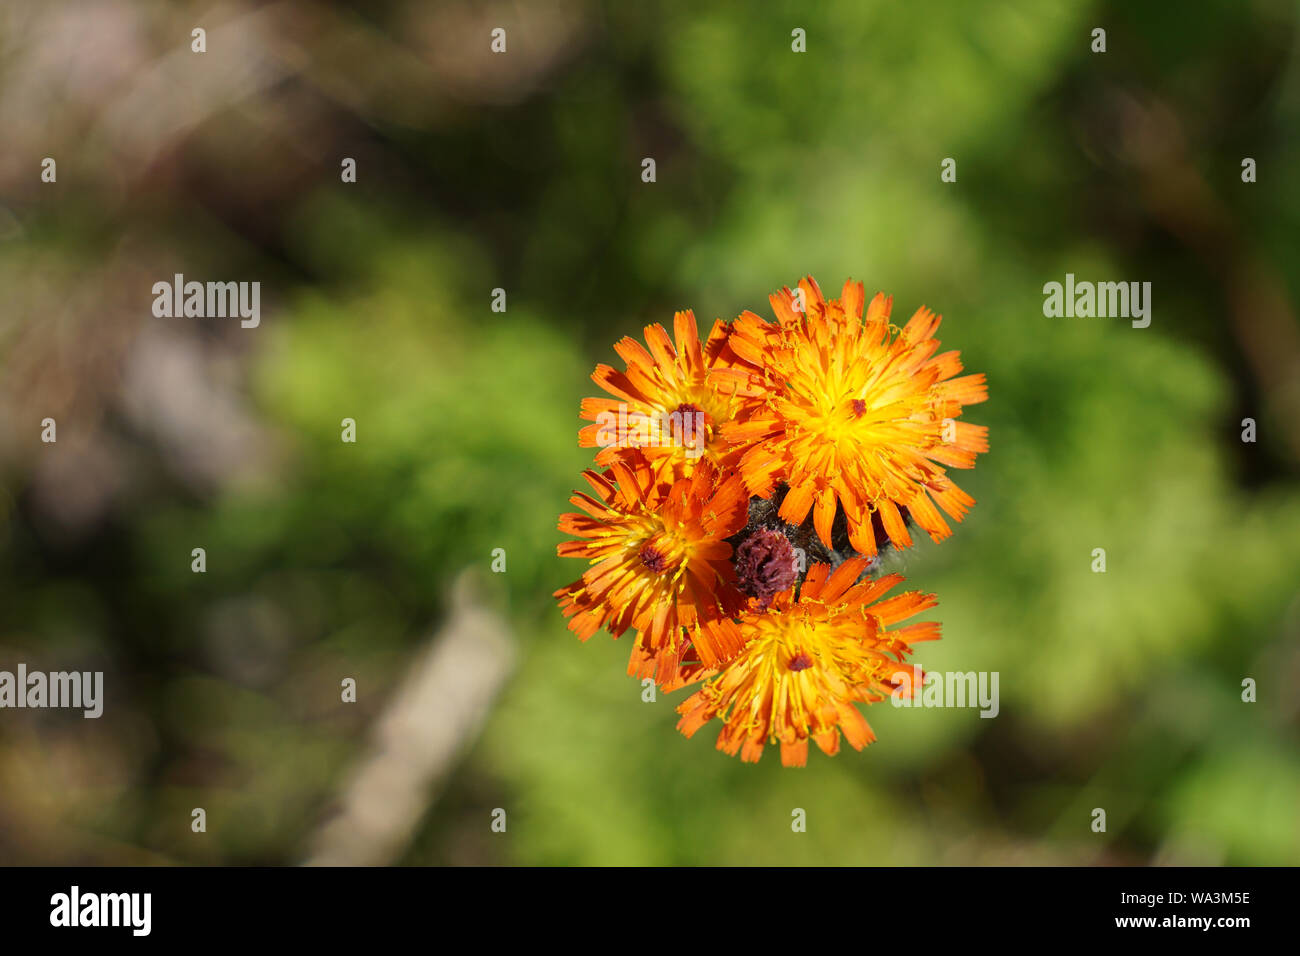 Close-up of Orange Hawkweed flower Stock Photo